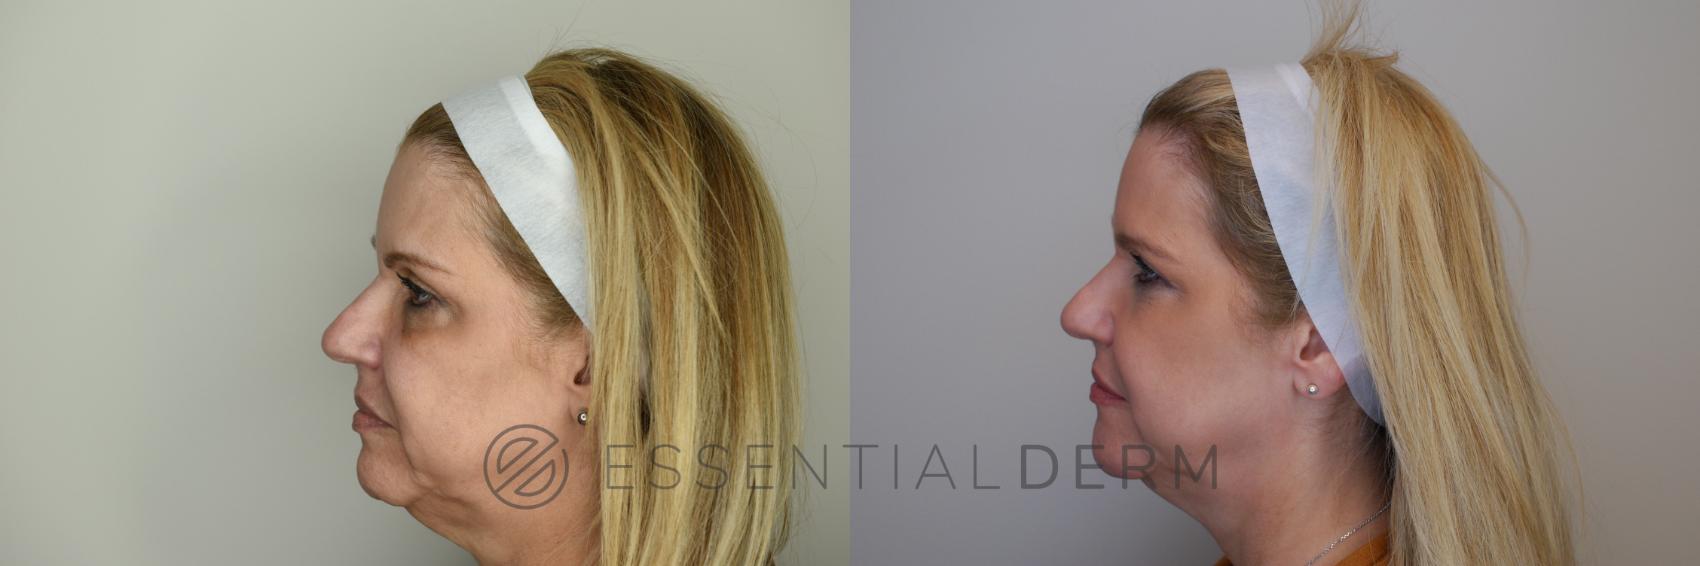 Dermal Fillers Case 22 Before & After Left Side | Natick, MA | Essential Dermatology